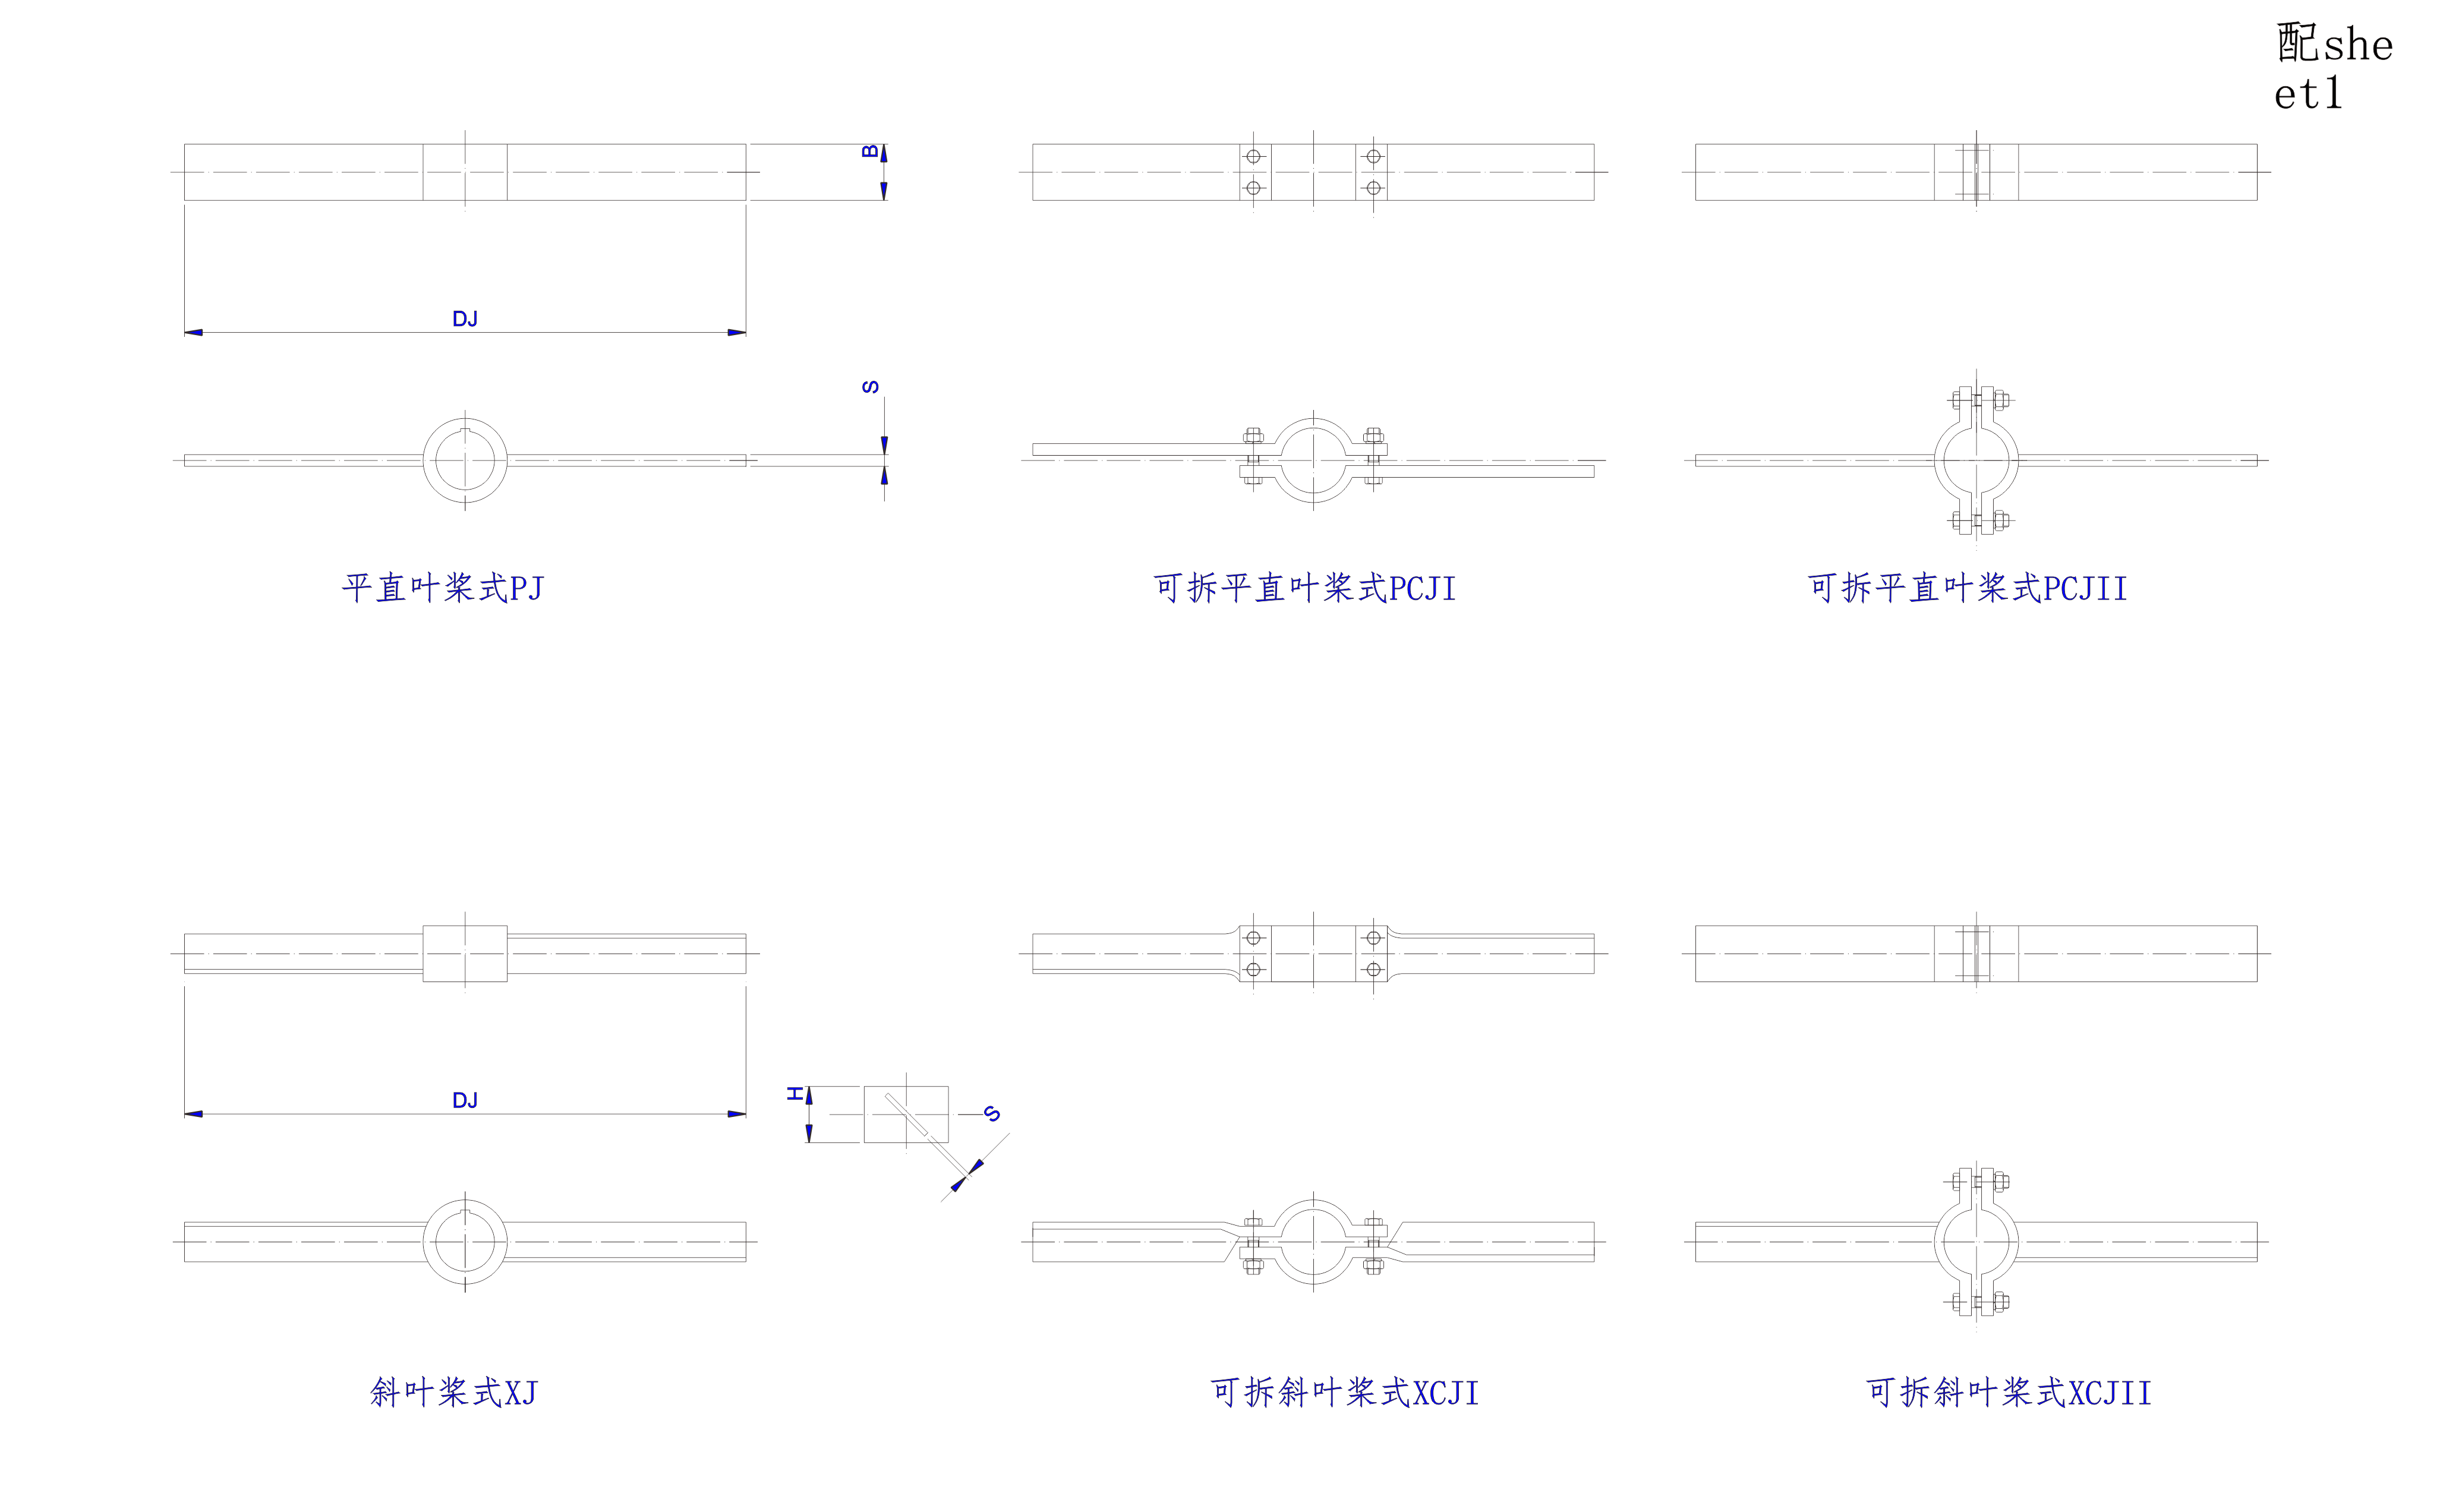   平直叶桨式与斜叶桨式搅拌器设计图